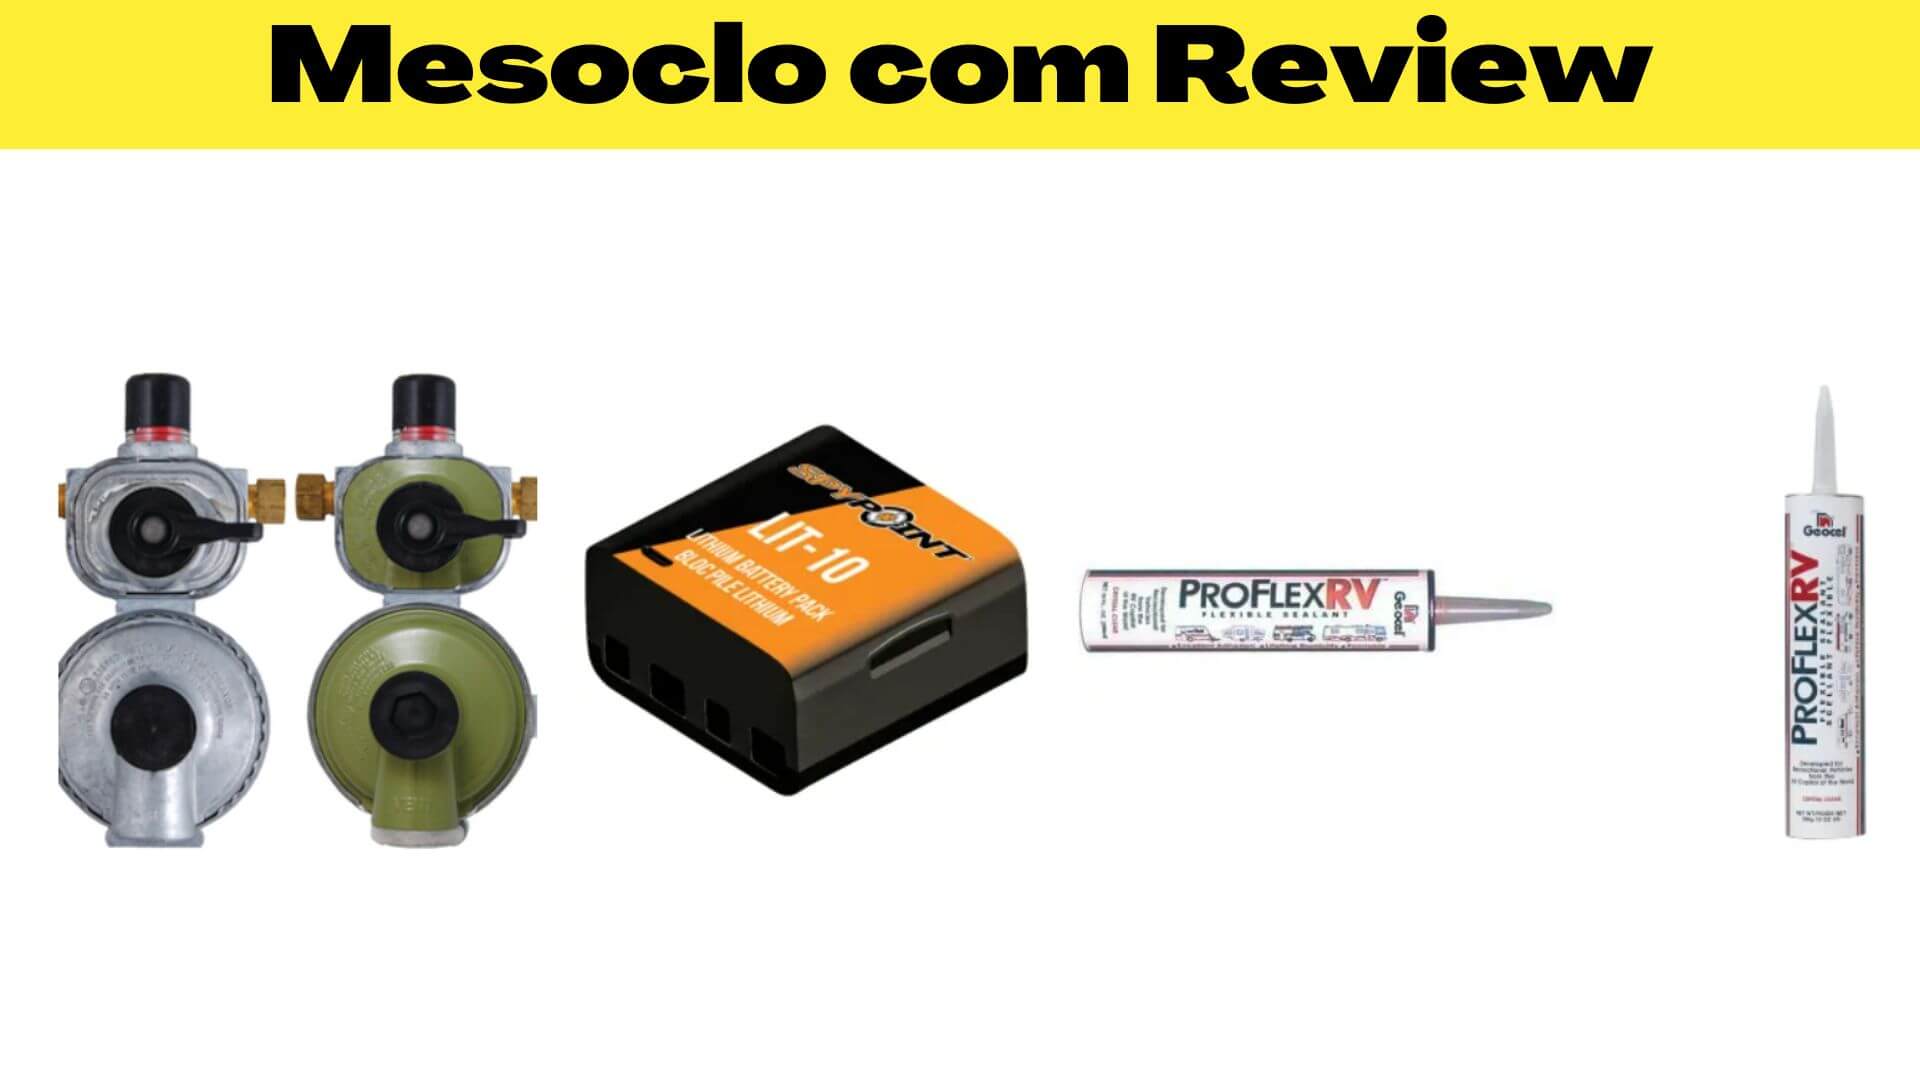 Mesoclo com Review